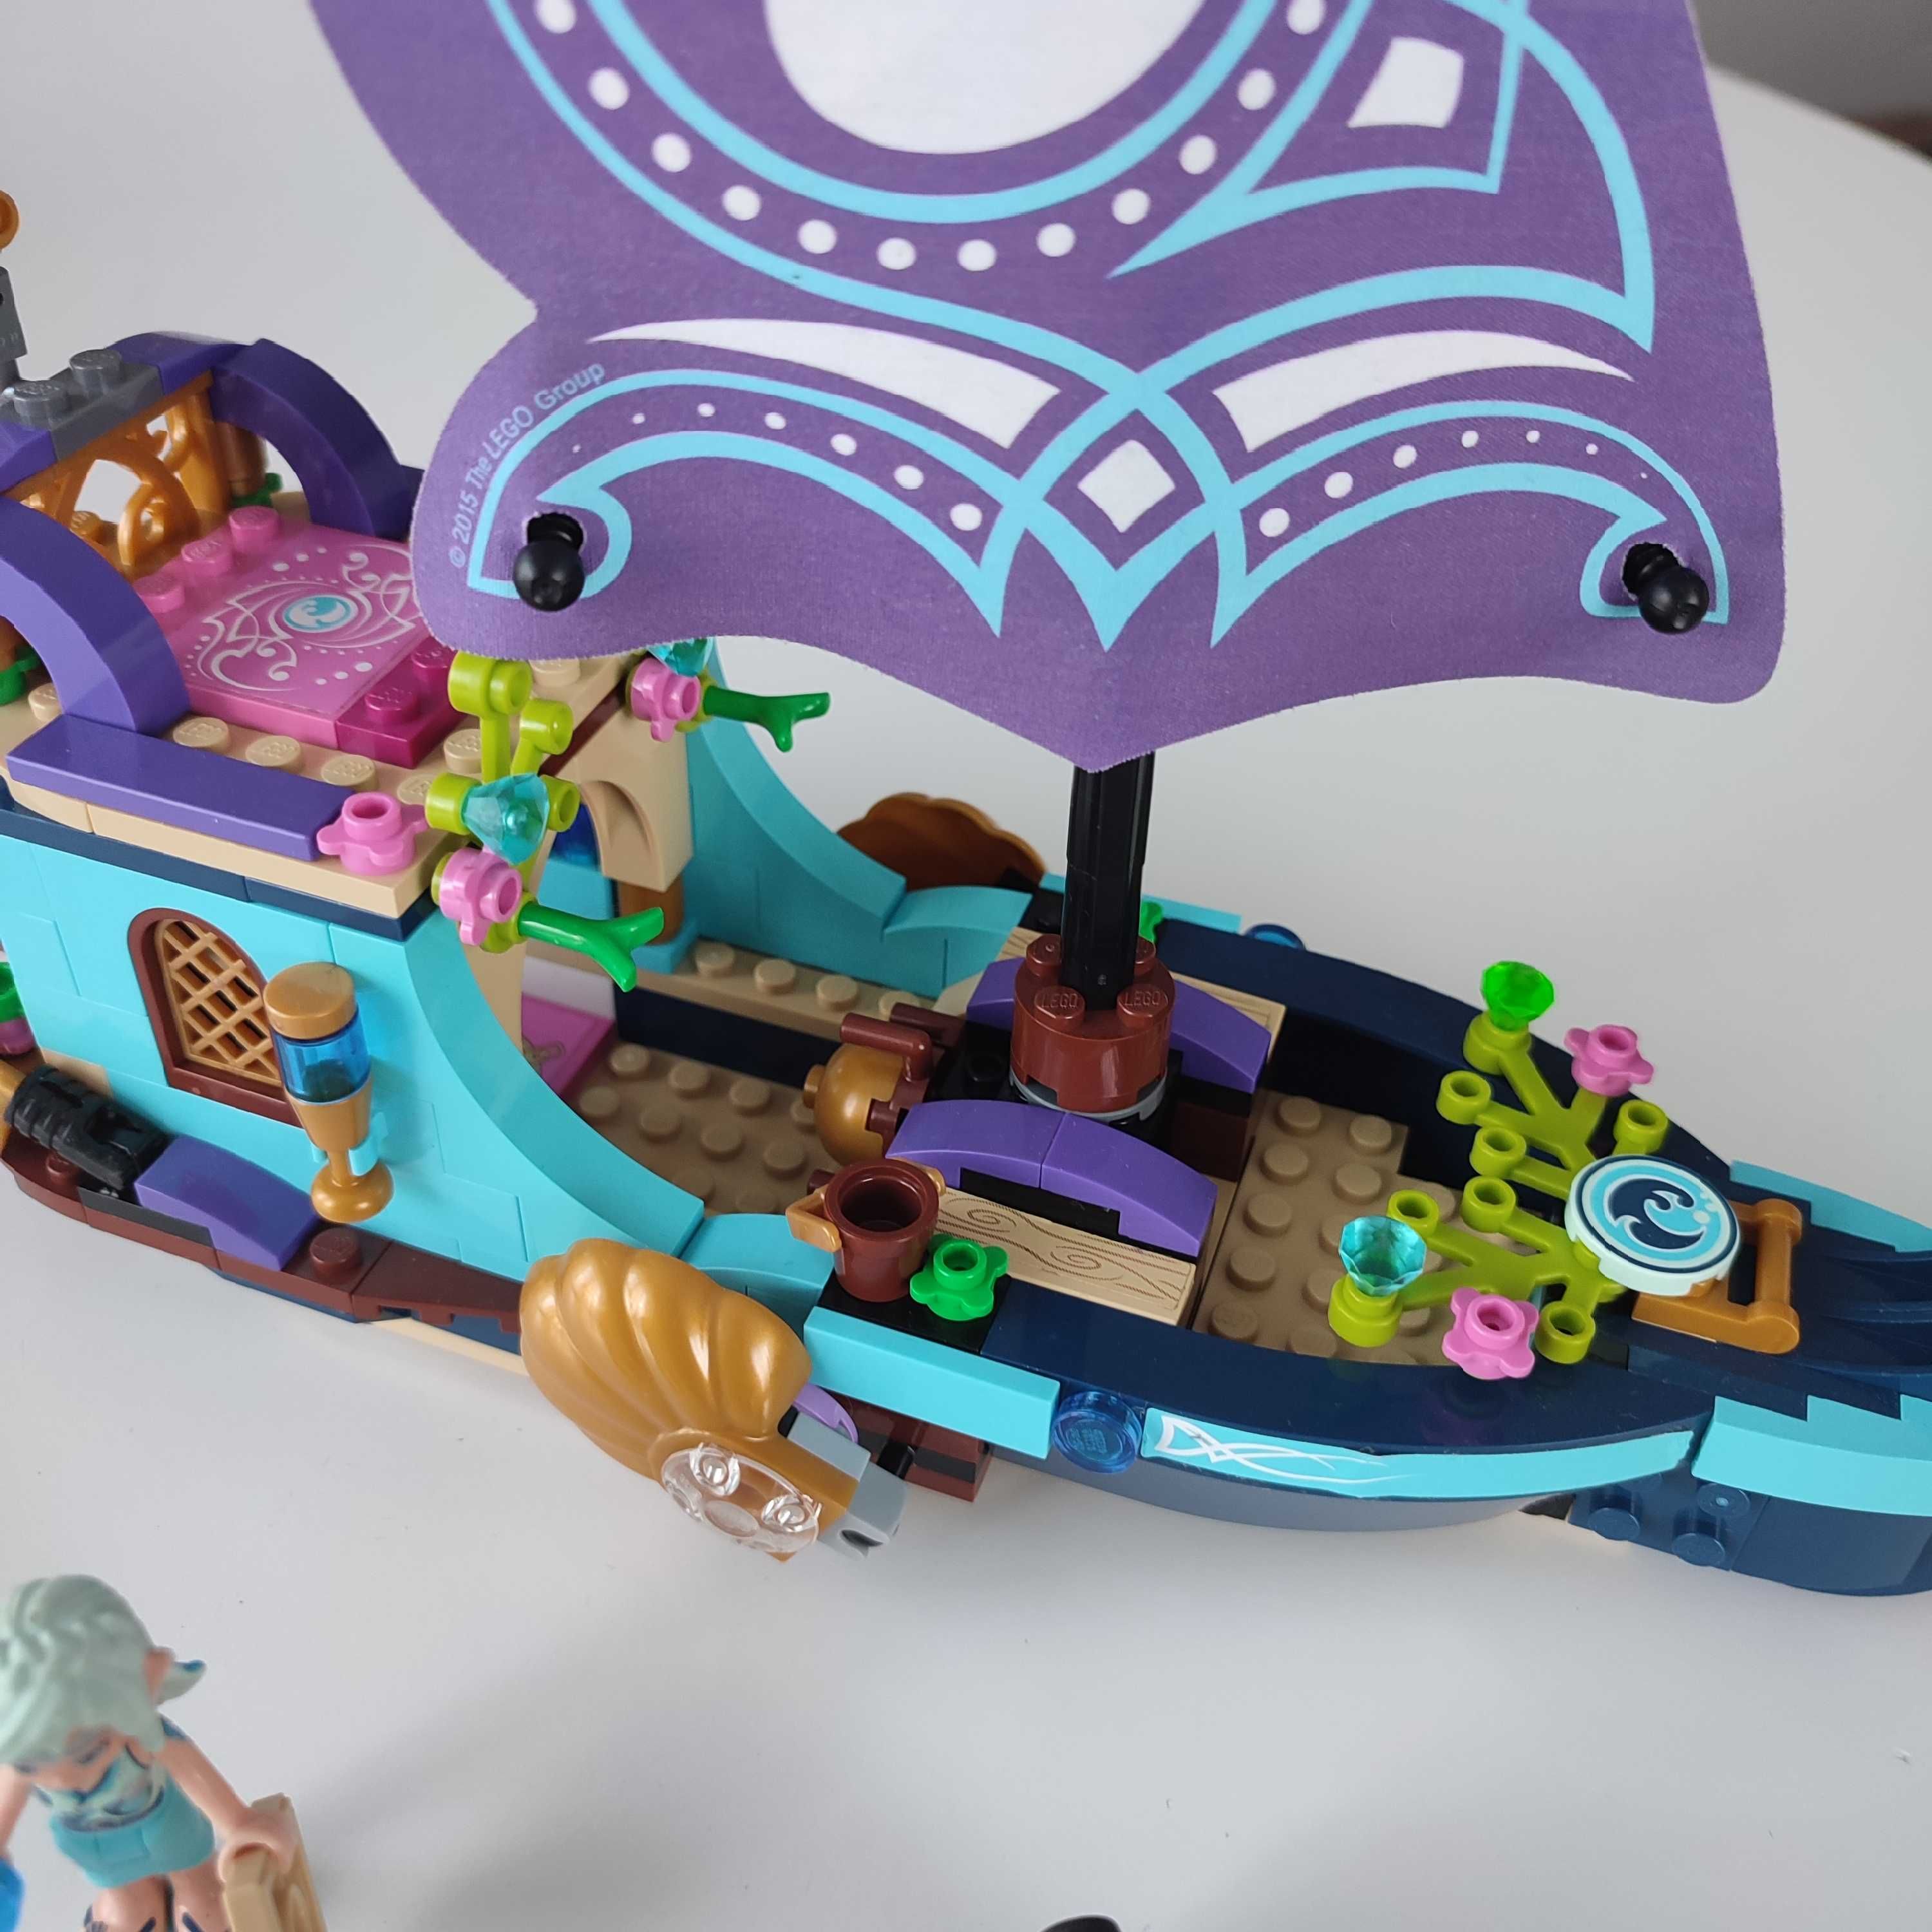 LEGO Elves 41073 statek Naidy kompletny z instrukcją